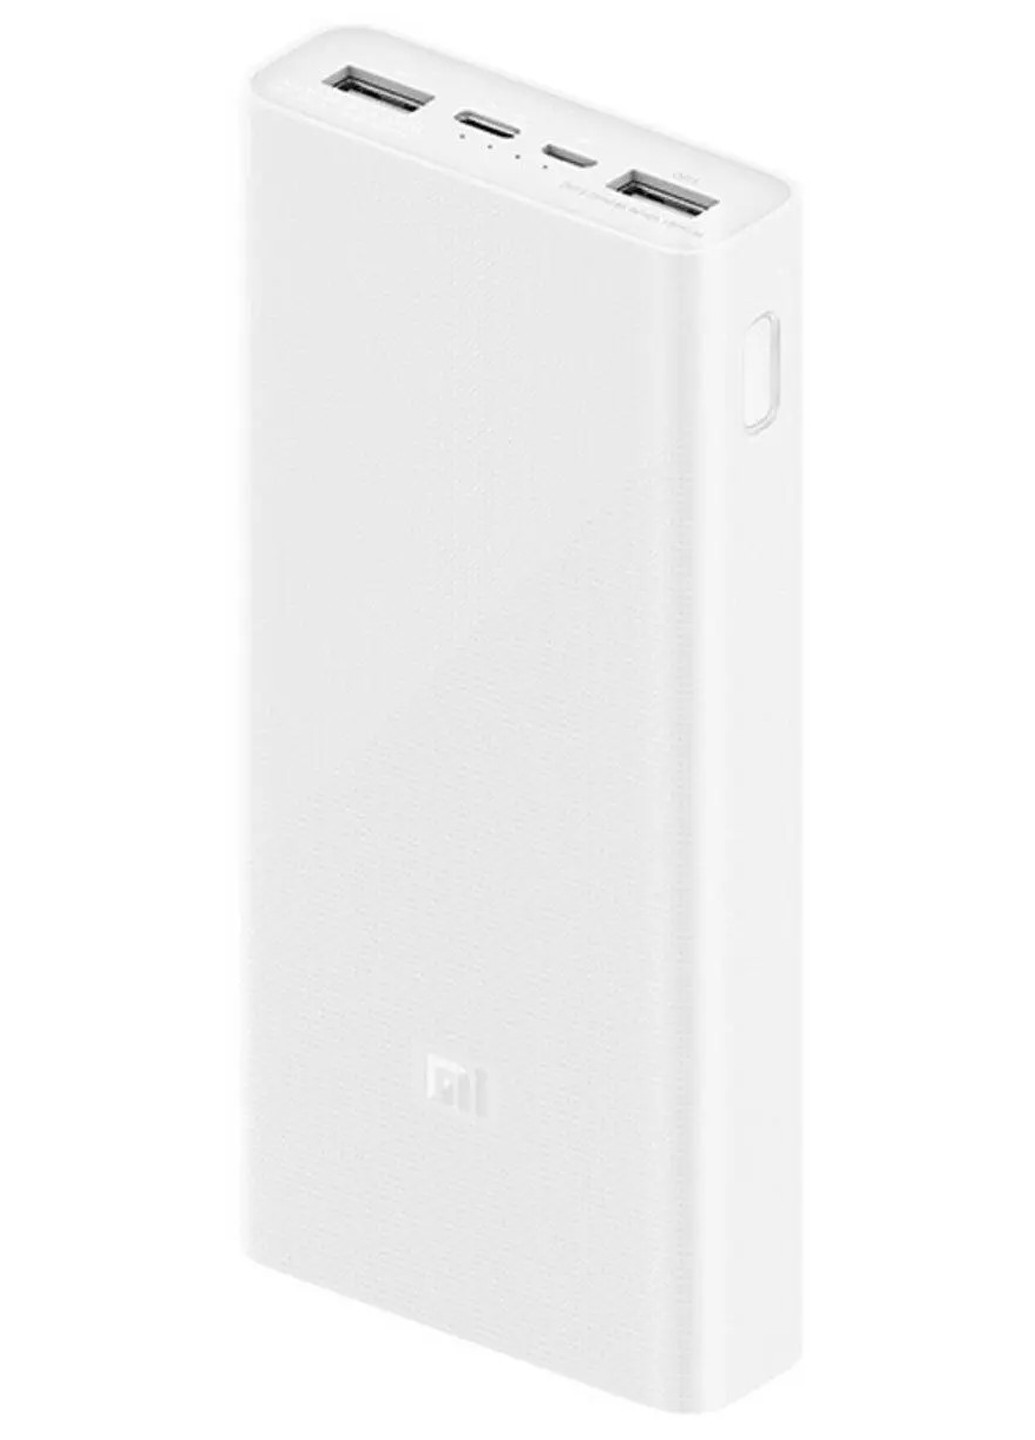 УМБ Power Bank 20000 mAh micro-USB Type-C швидке зарядження Xiaomi redmi (276905462)